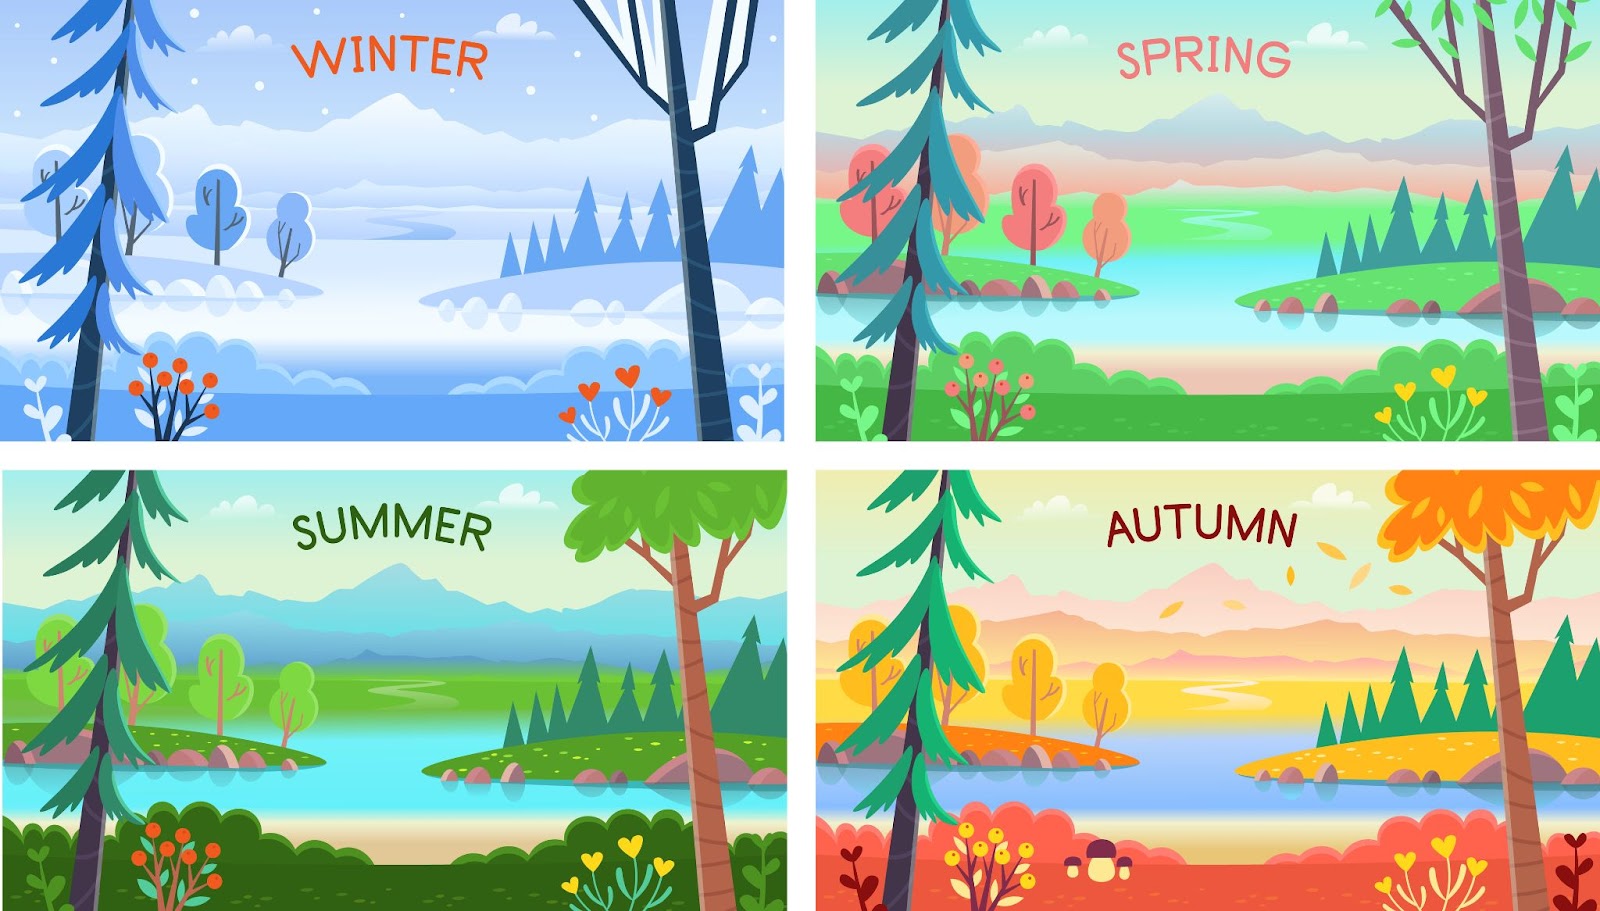 Dört mevsim manzara. Kış, ilkbahar, yaz, sonbahar.